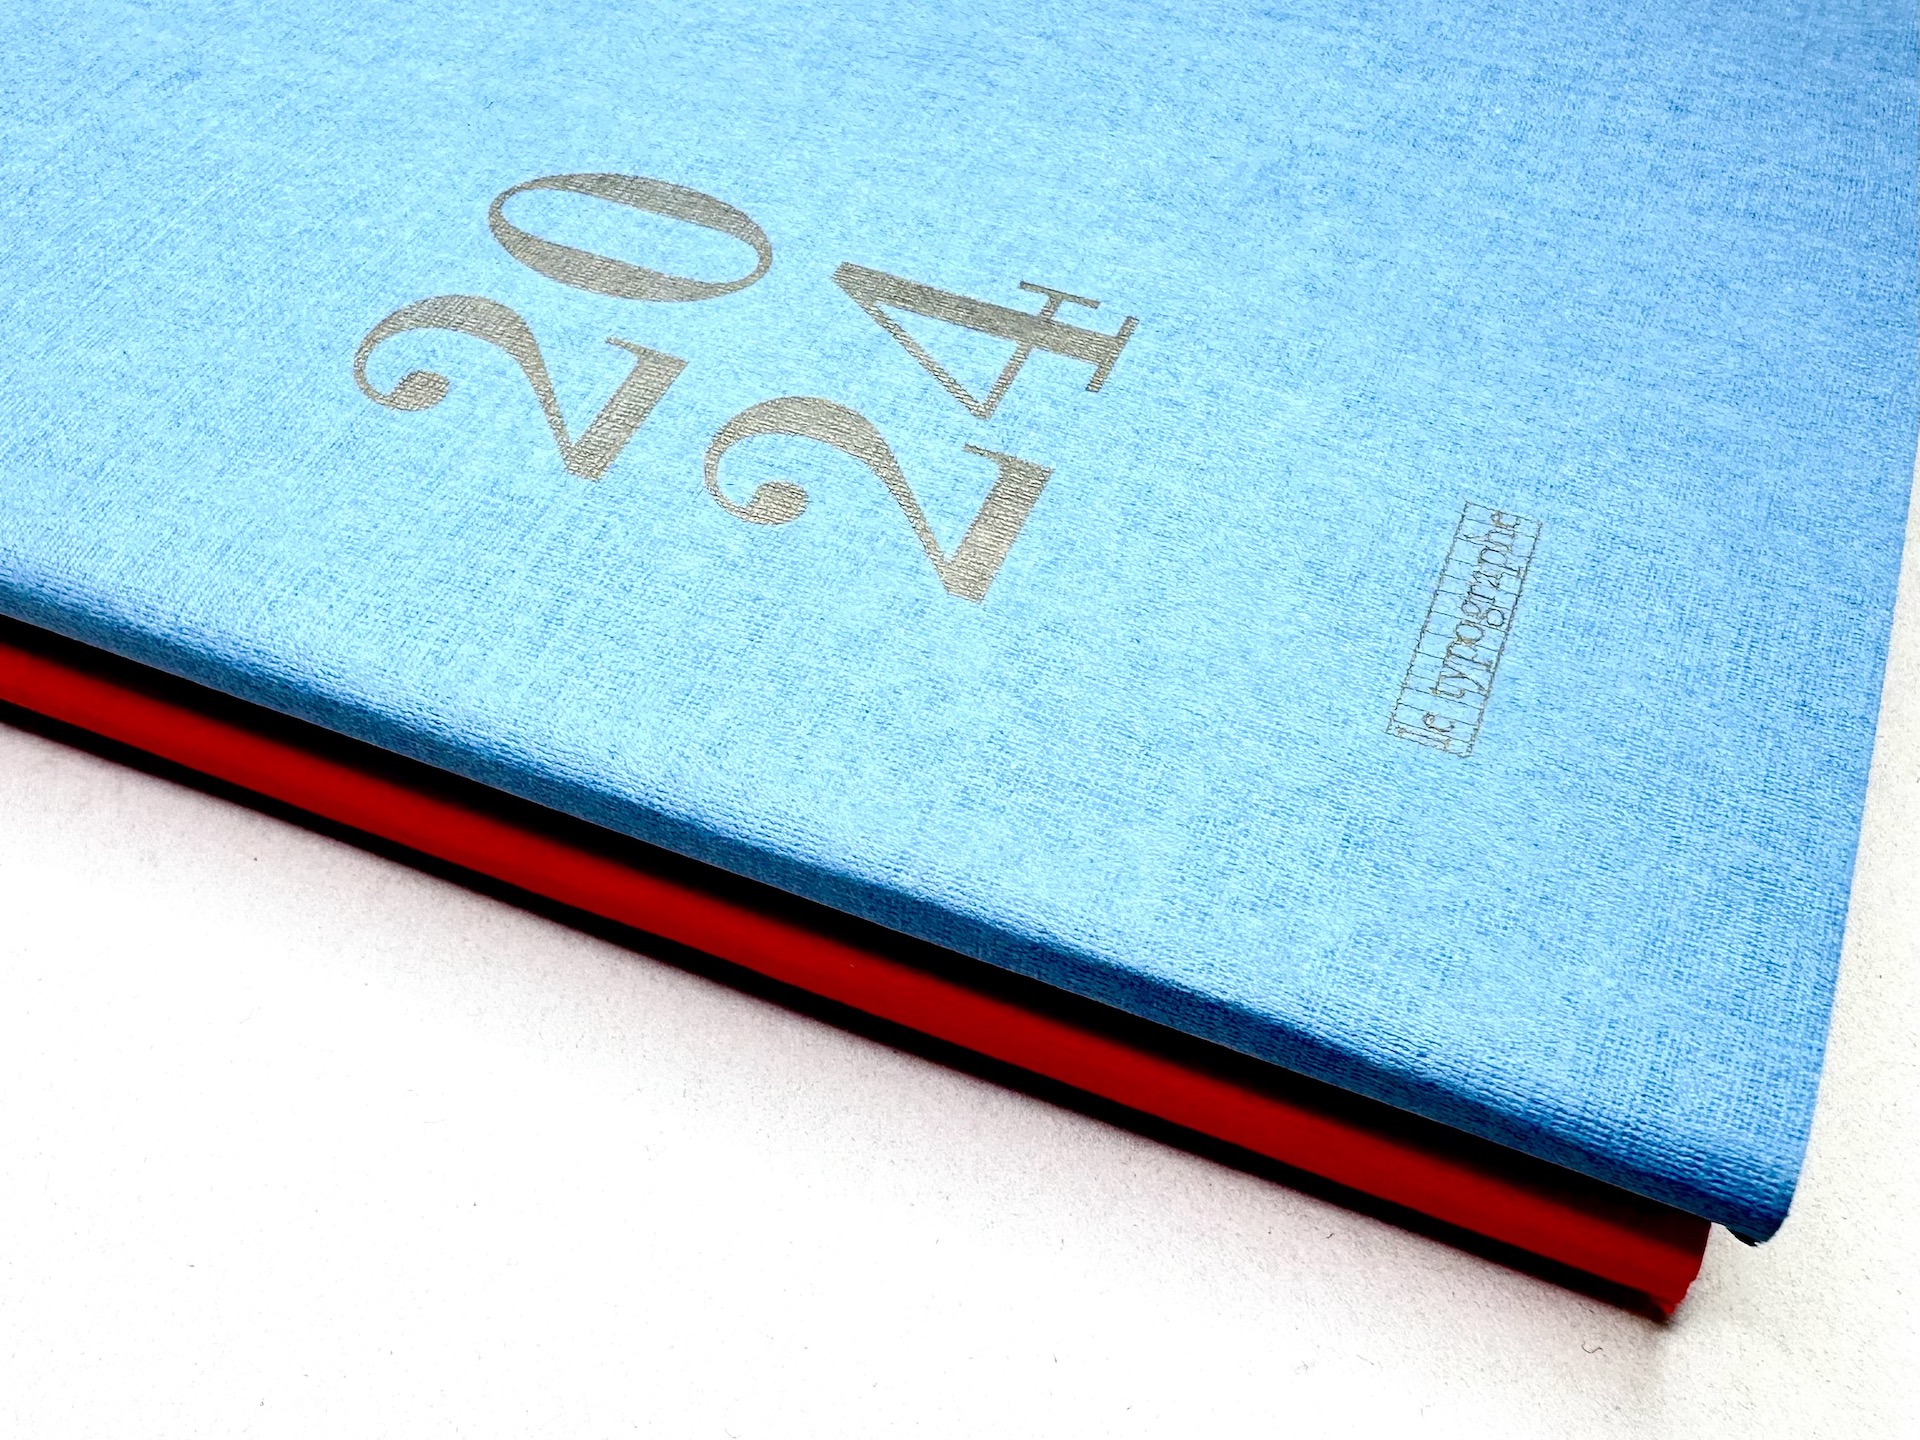 AGENDA HEBDOMADAIRE 2024 A5+ souple – couleur mer bleue, le typographe, Qualité typo